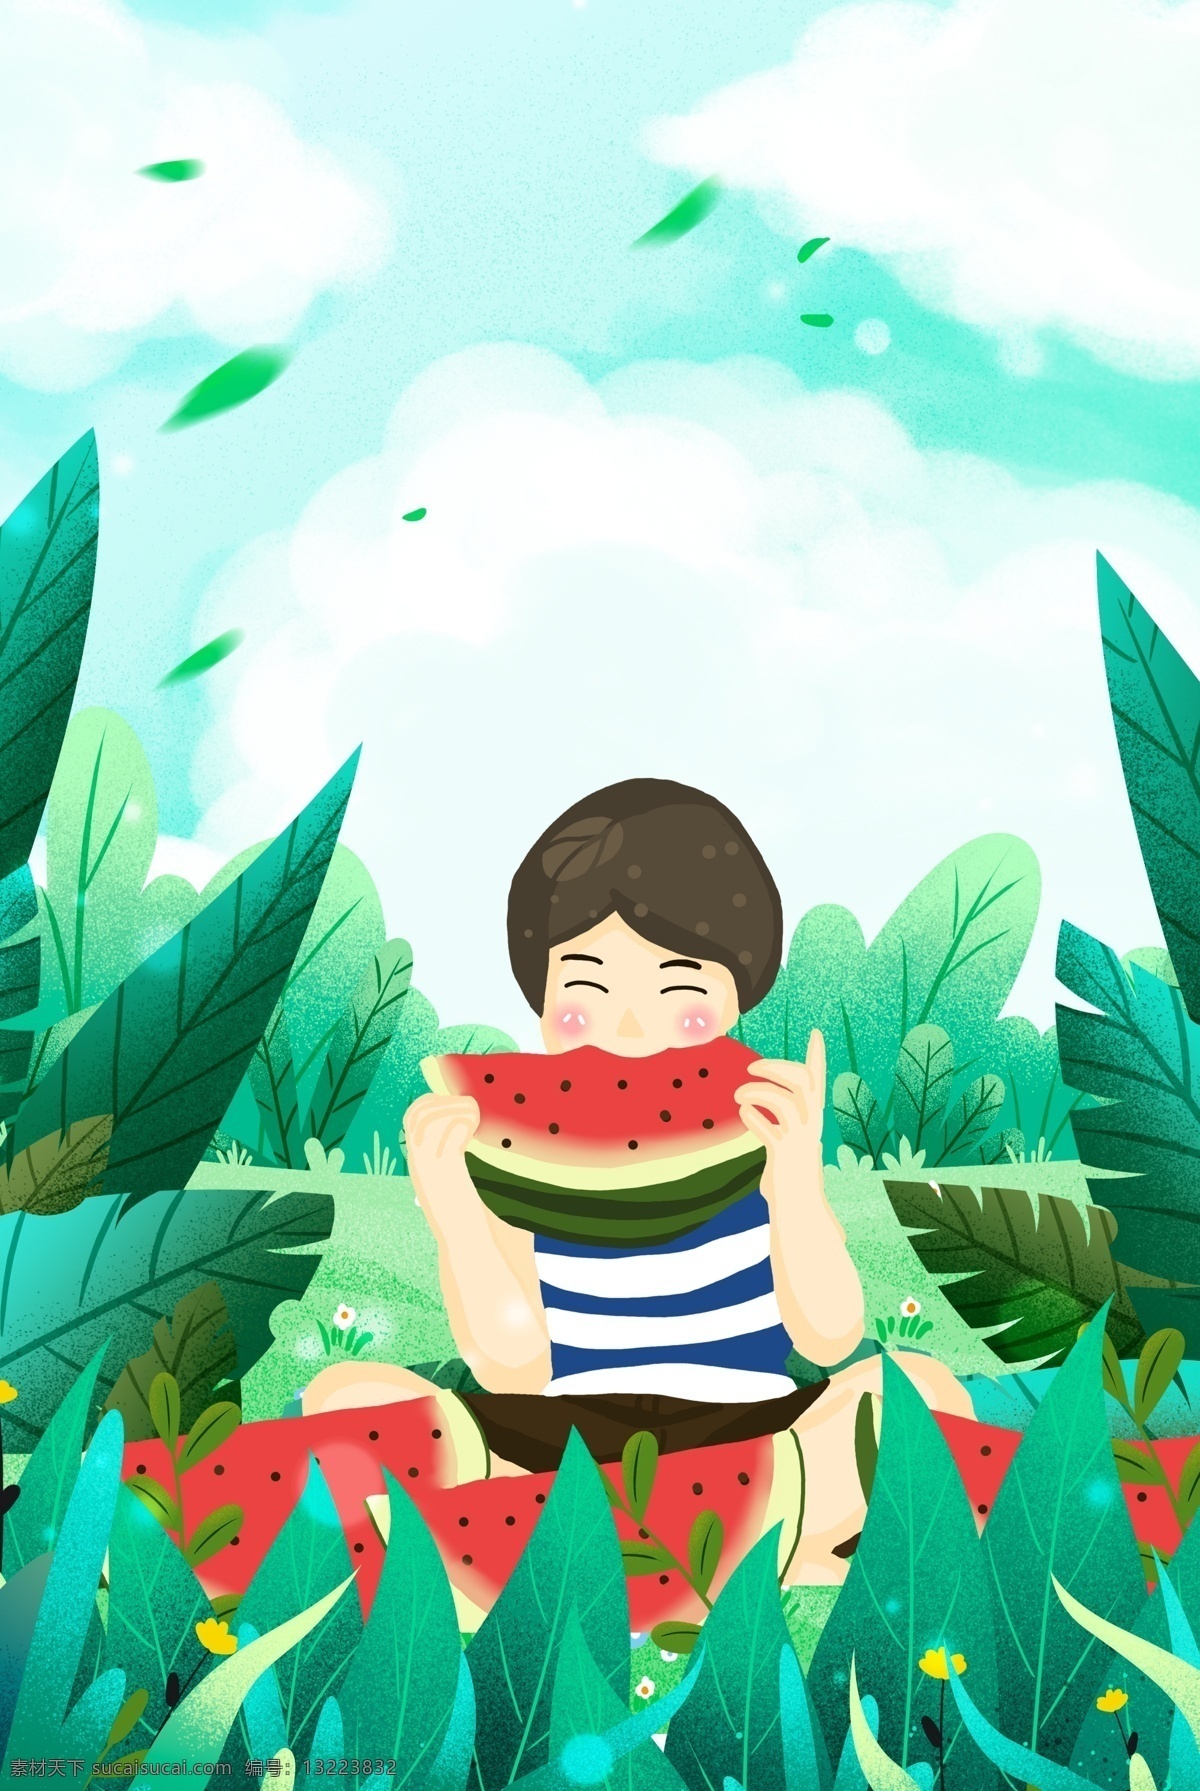 夏季 西瓜 绿色 自然 背景 扁平 简约 文艺 清新 卡通 手绘 水果茶